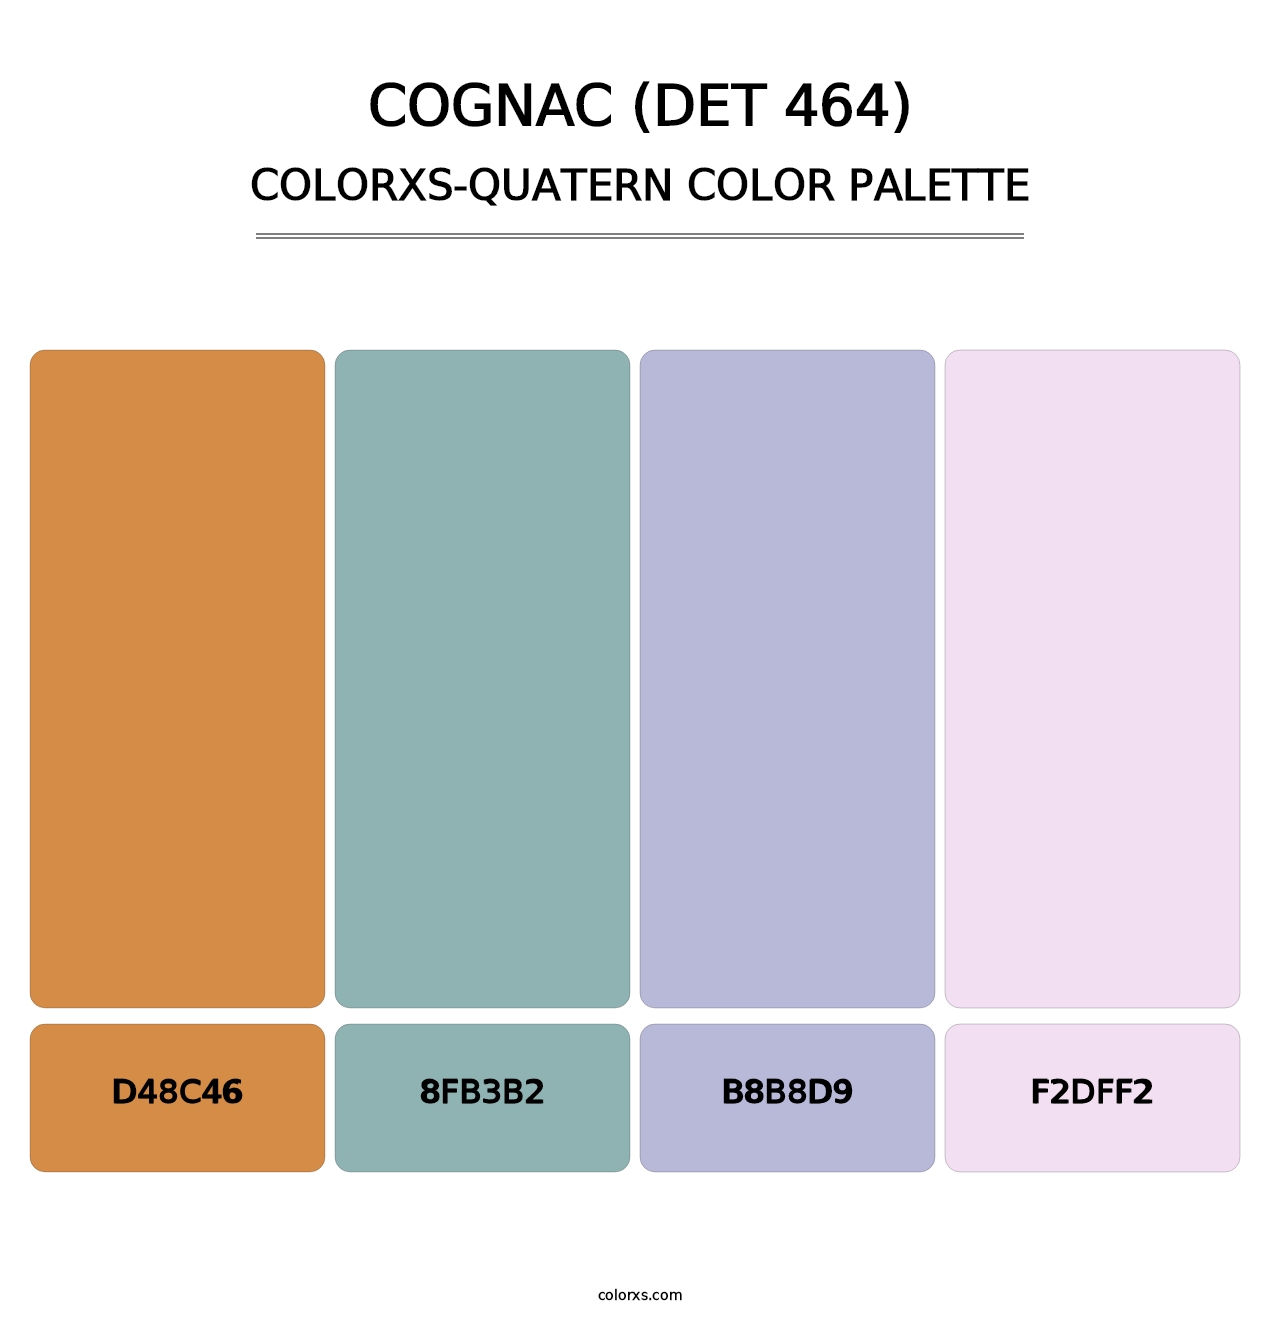 Cognac (DET 464) - Colorxs Quatern Palette